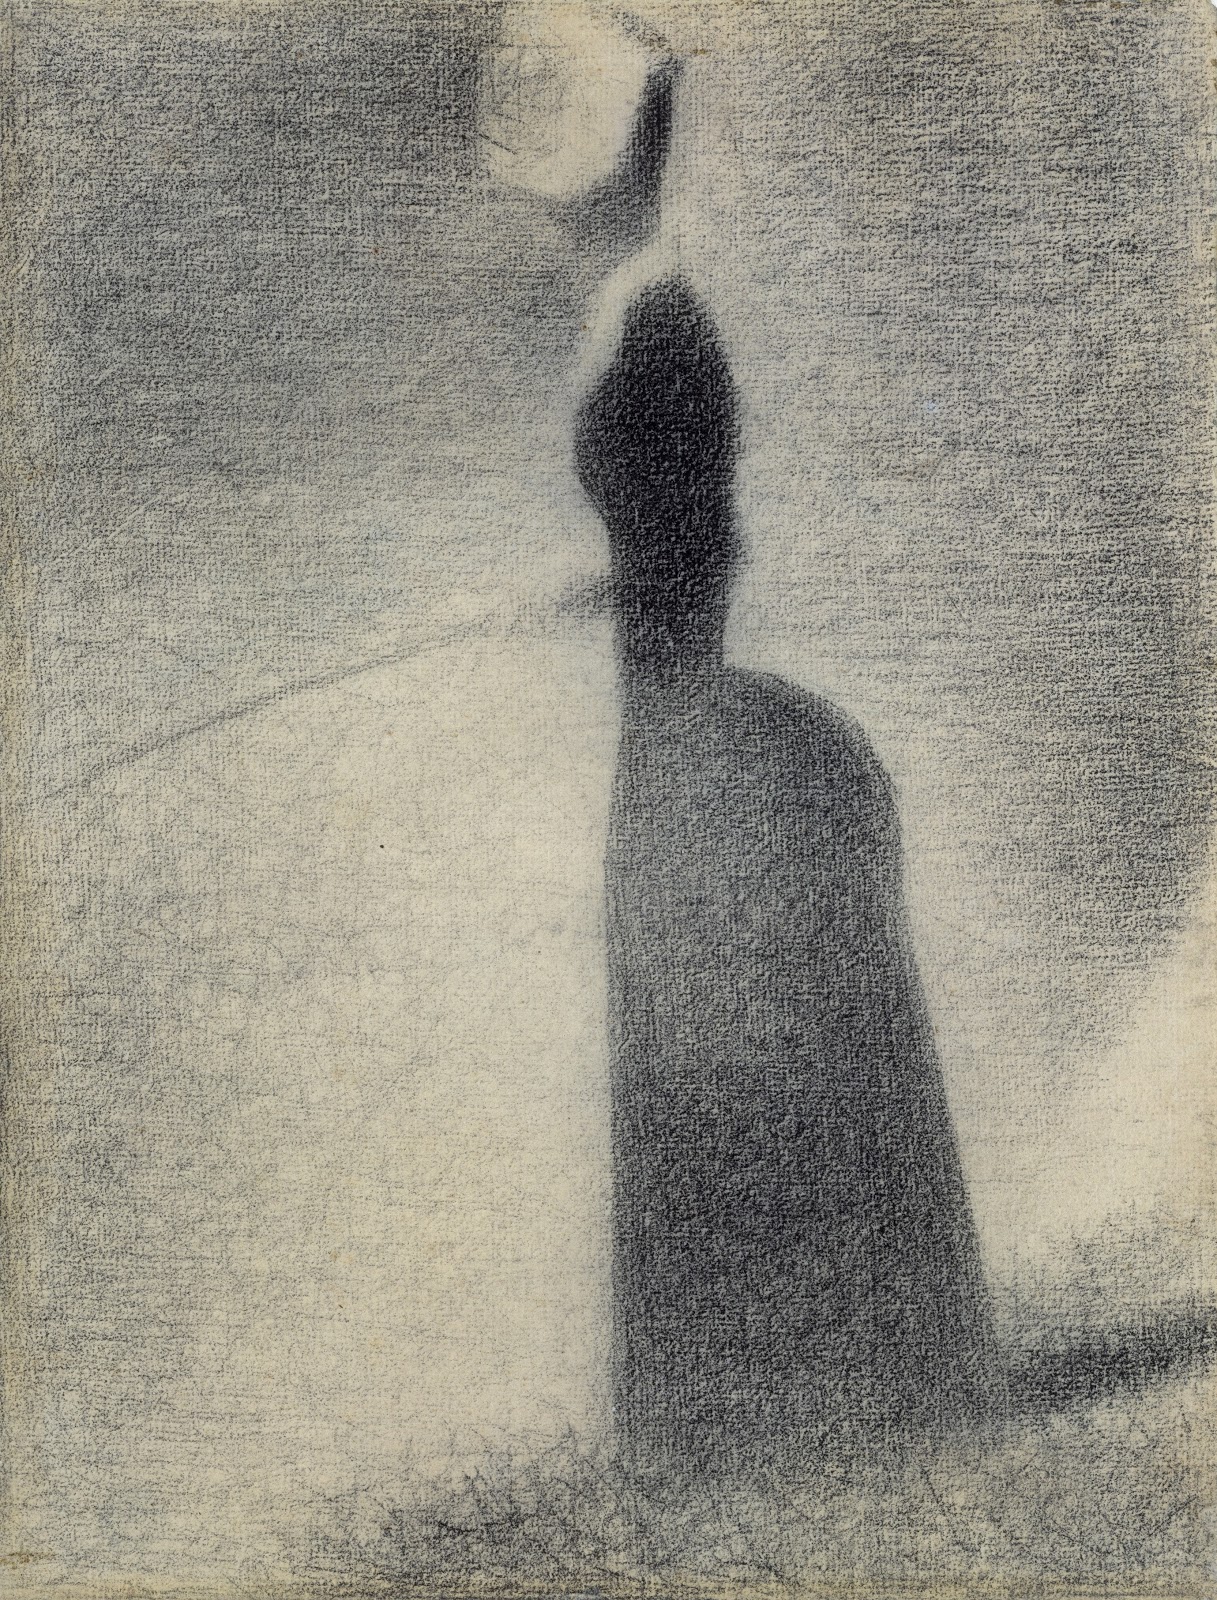 Georges+Seurat-1859-1891 (26).jpg